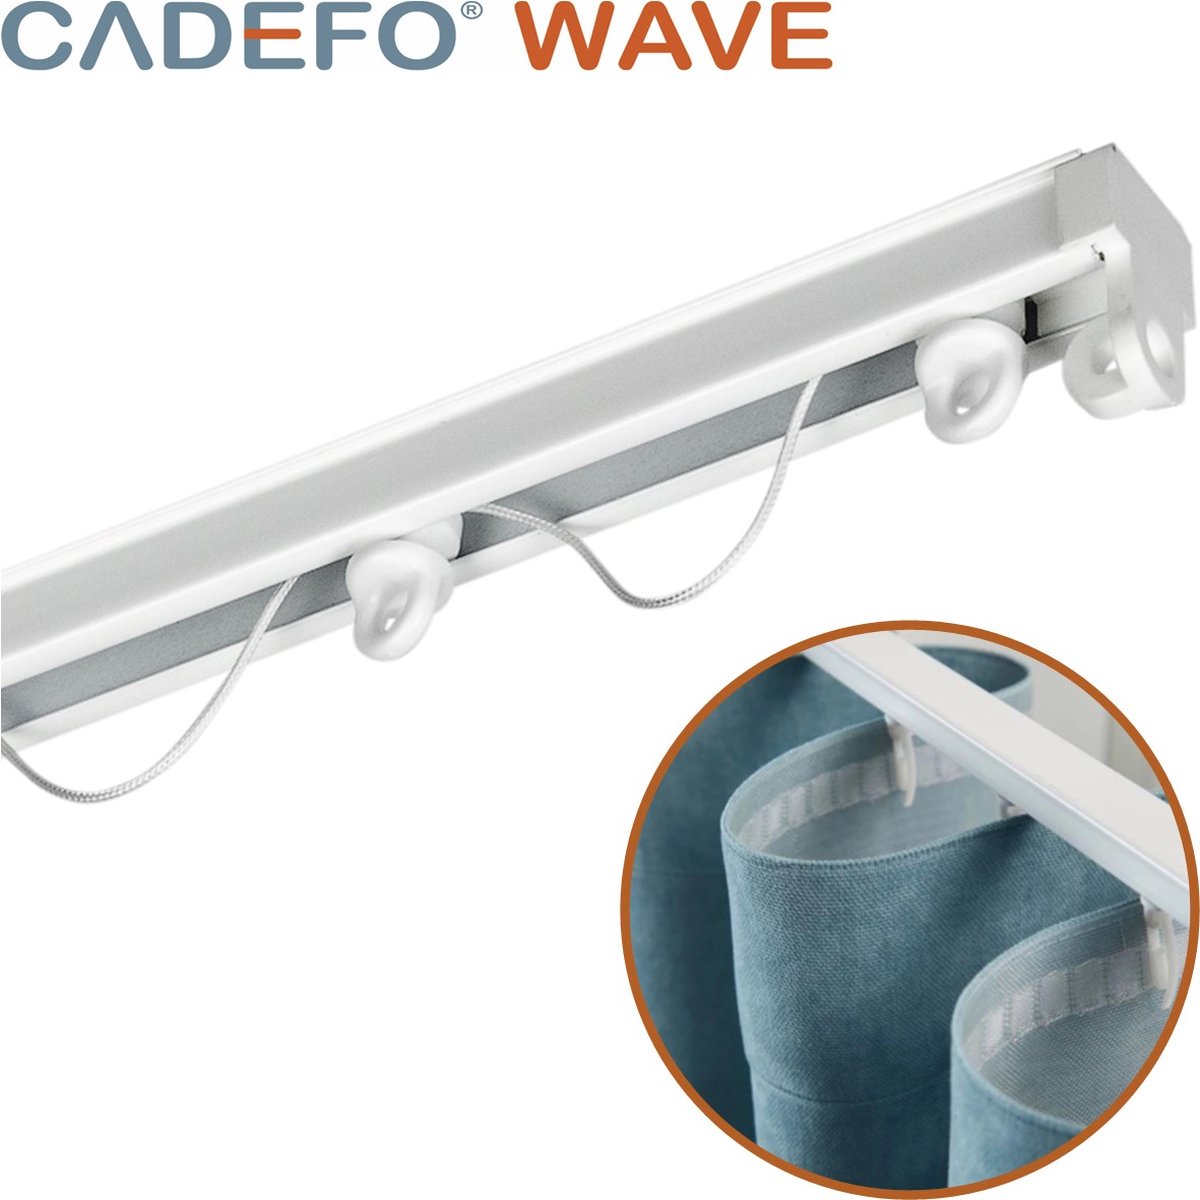 CADEFO WAVE (301 - 350 cm) Gordijnrails - Compleet op maat! - UIT 1 STUK - Leverbaar tot 6 meter - Plafondbevestiging - Lengte 316 cm